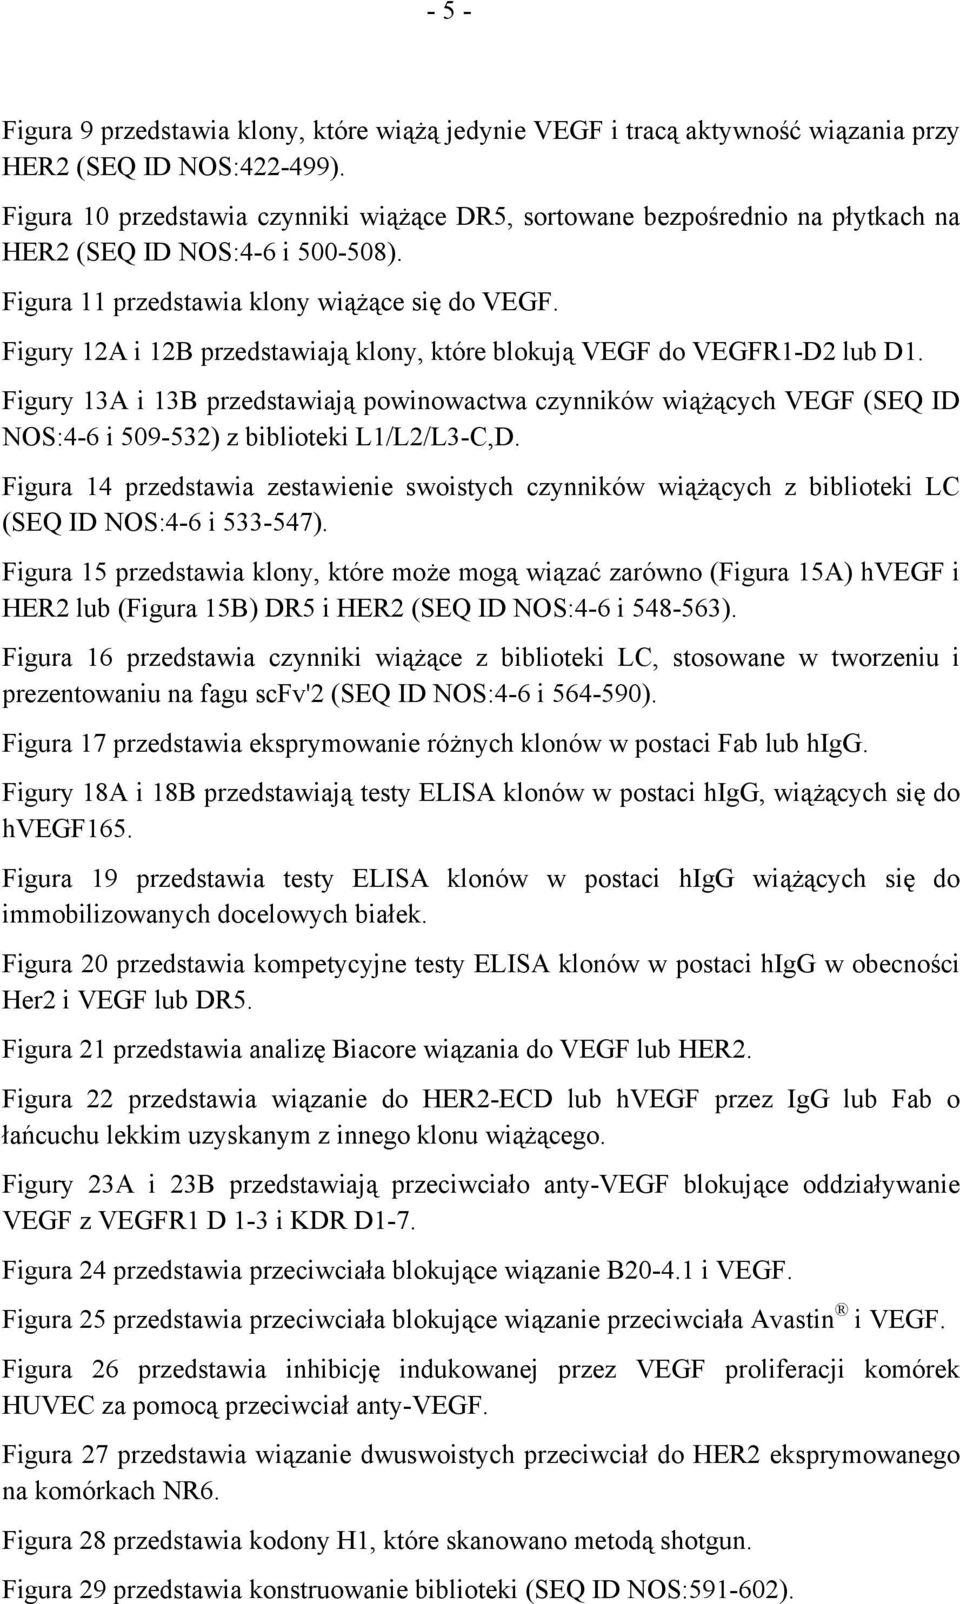 Figury 12A i 12B przedstawiają klony, które blokują VEGF do VEGFR1-D2 lub D1. Figury 13A i 13B przedstawiają powinowactwa czynników wiążących VEGF (SEQ ID NOS:4-6 i 509-532) z biblioteki L1/L2/L3-C,D.